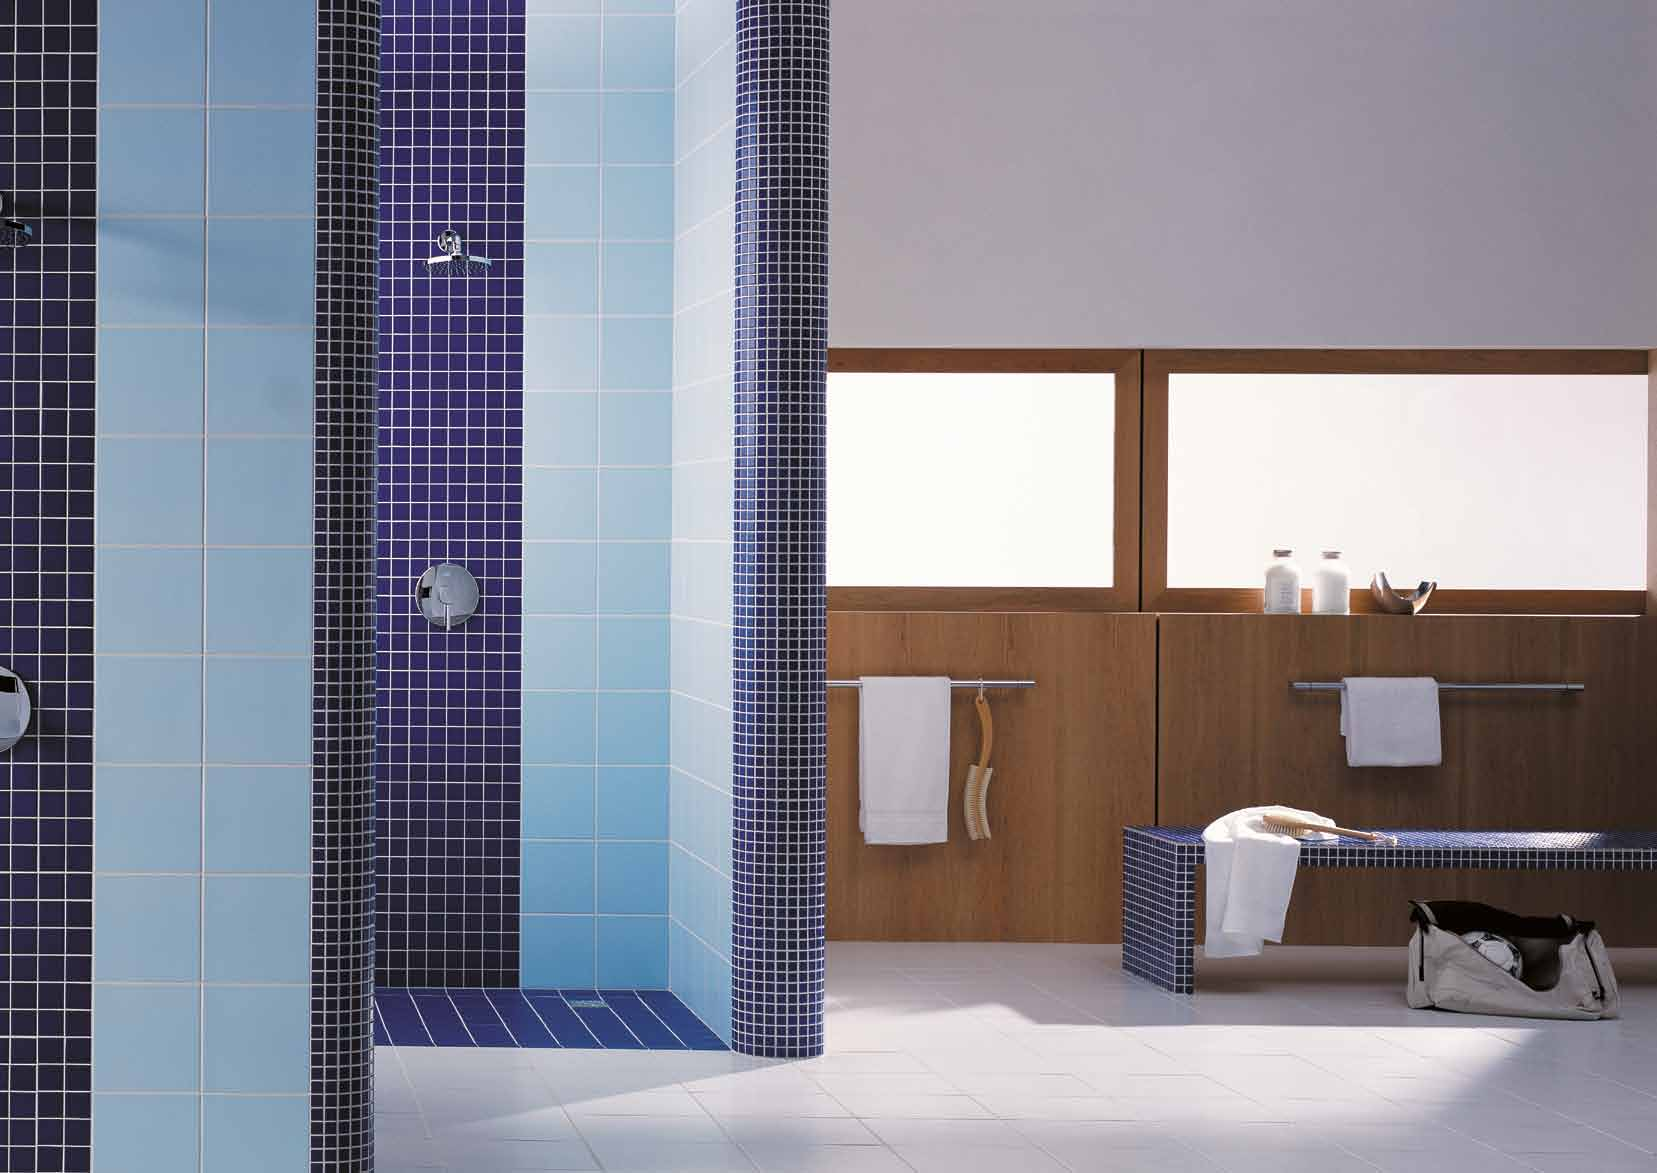 COLOR TWO RUS Color Two - комплексное решение Коллекция глазурованной плитки для внутреннего использования, цветовая гамма которой полностью идентичная теплым и холодным цветам плитки коллекции